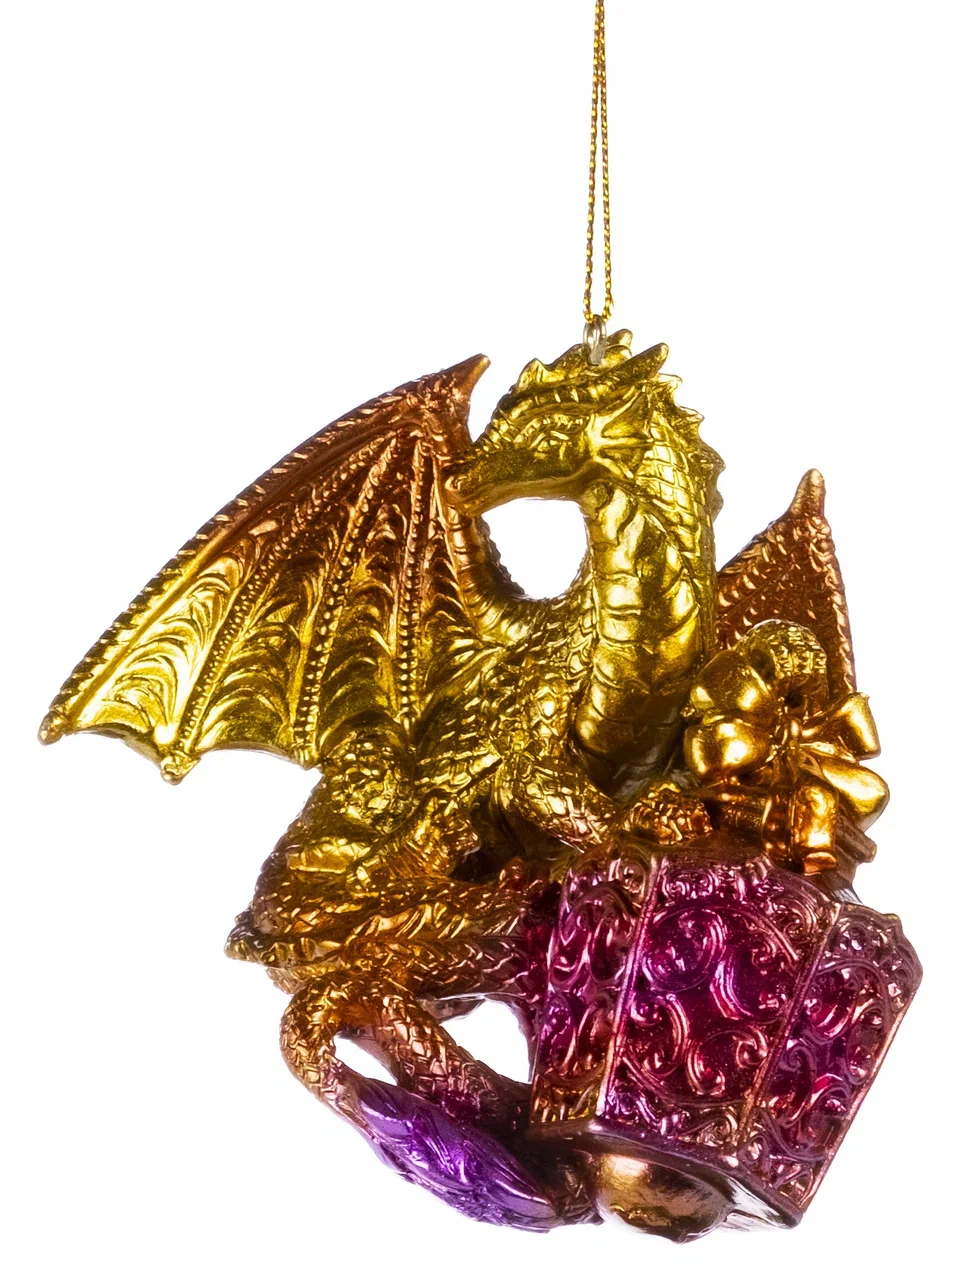 Елочная игрушка Феникс Present Дракон огненный 91541 1 шт. золотистый